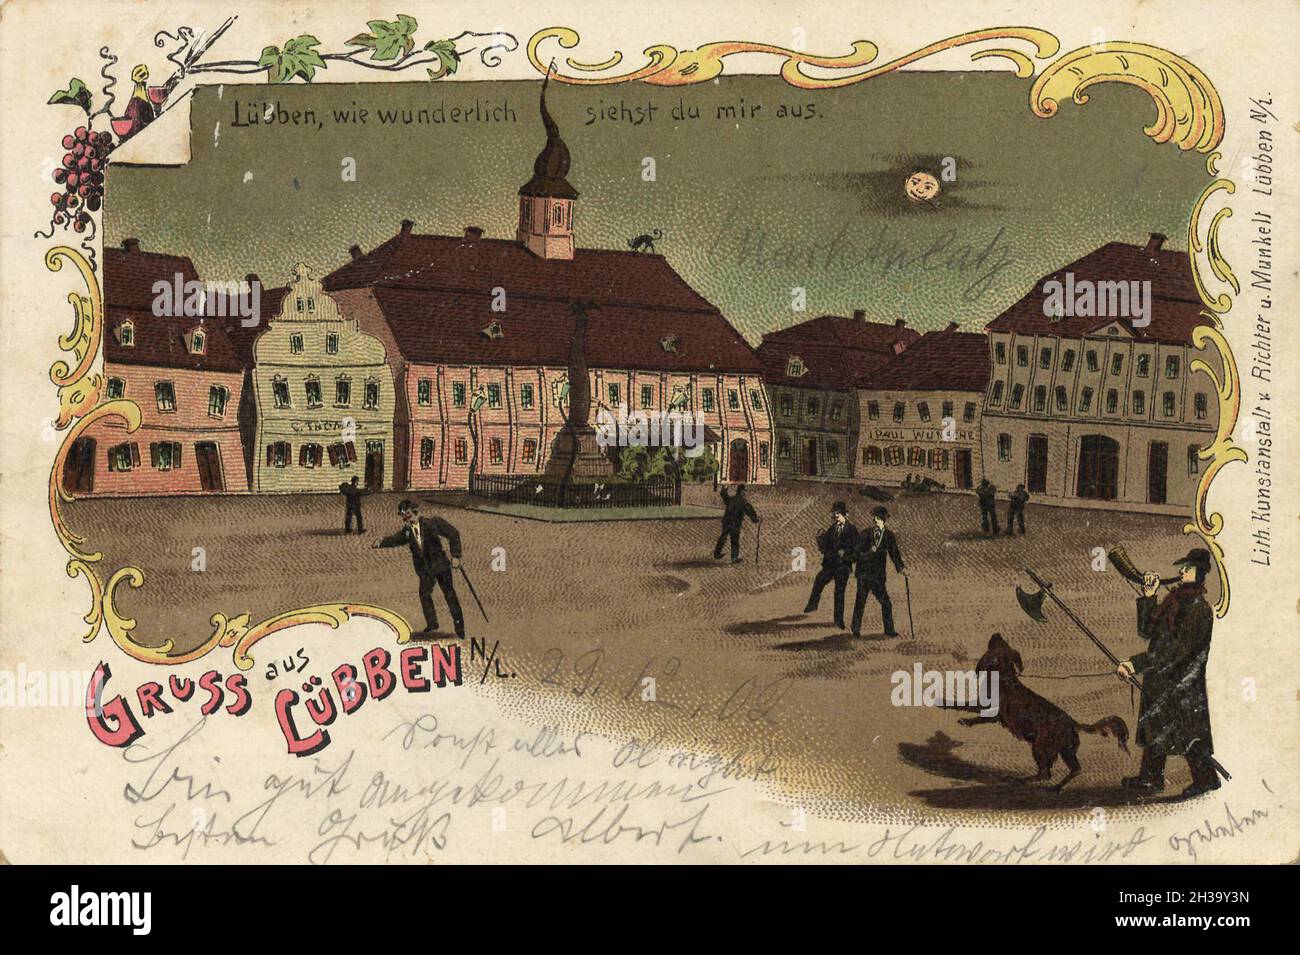 Lübben, Landkreis Dahme-Spreewald in der Niederlausitz im Land Brandenburg, Deutschland, Ansicht von ca 1910, digitale Reproduktion einer gemeinfreien Postkarte Stock Photo